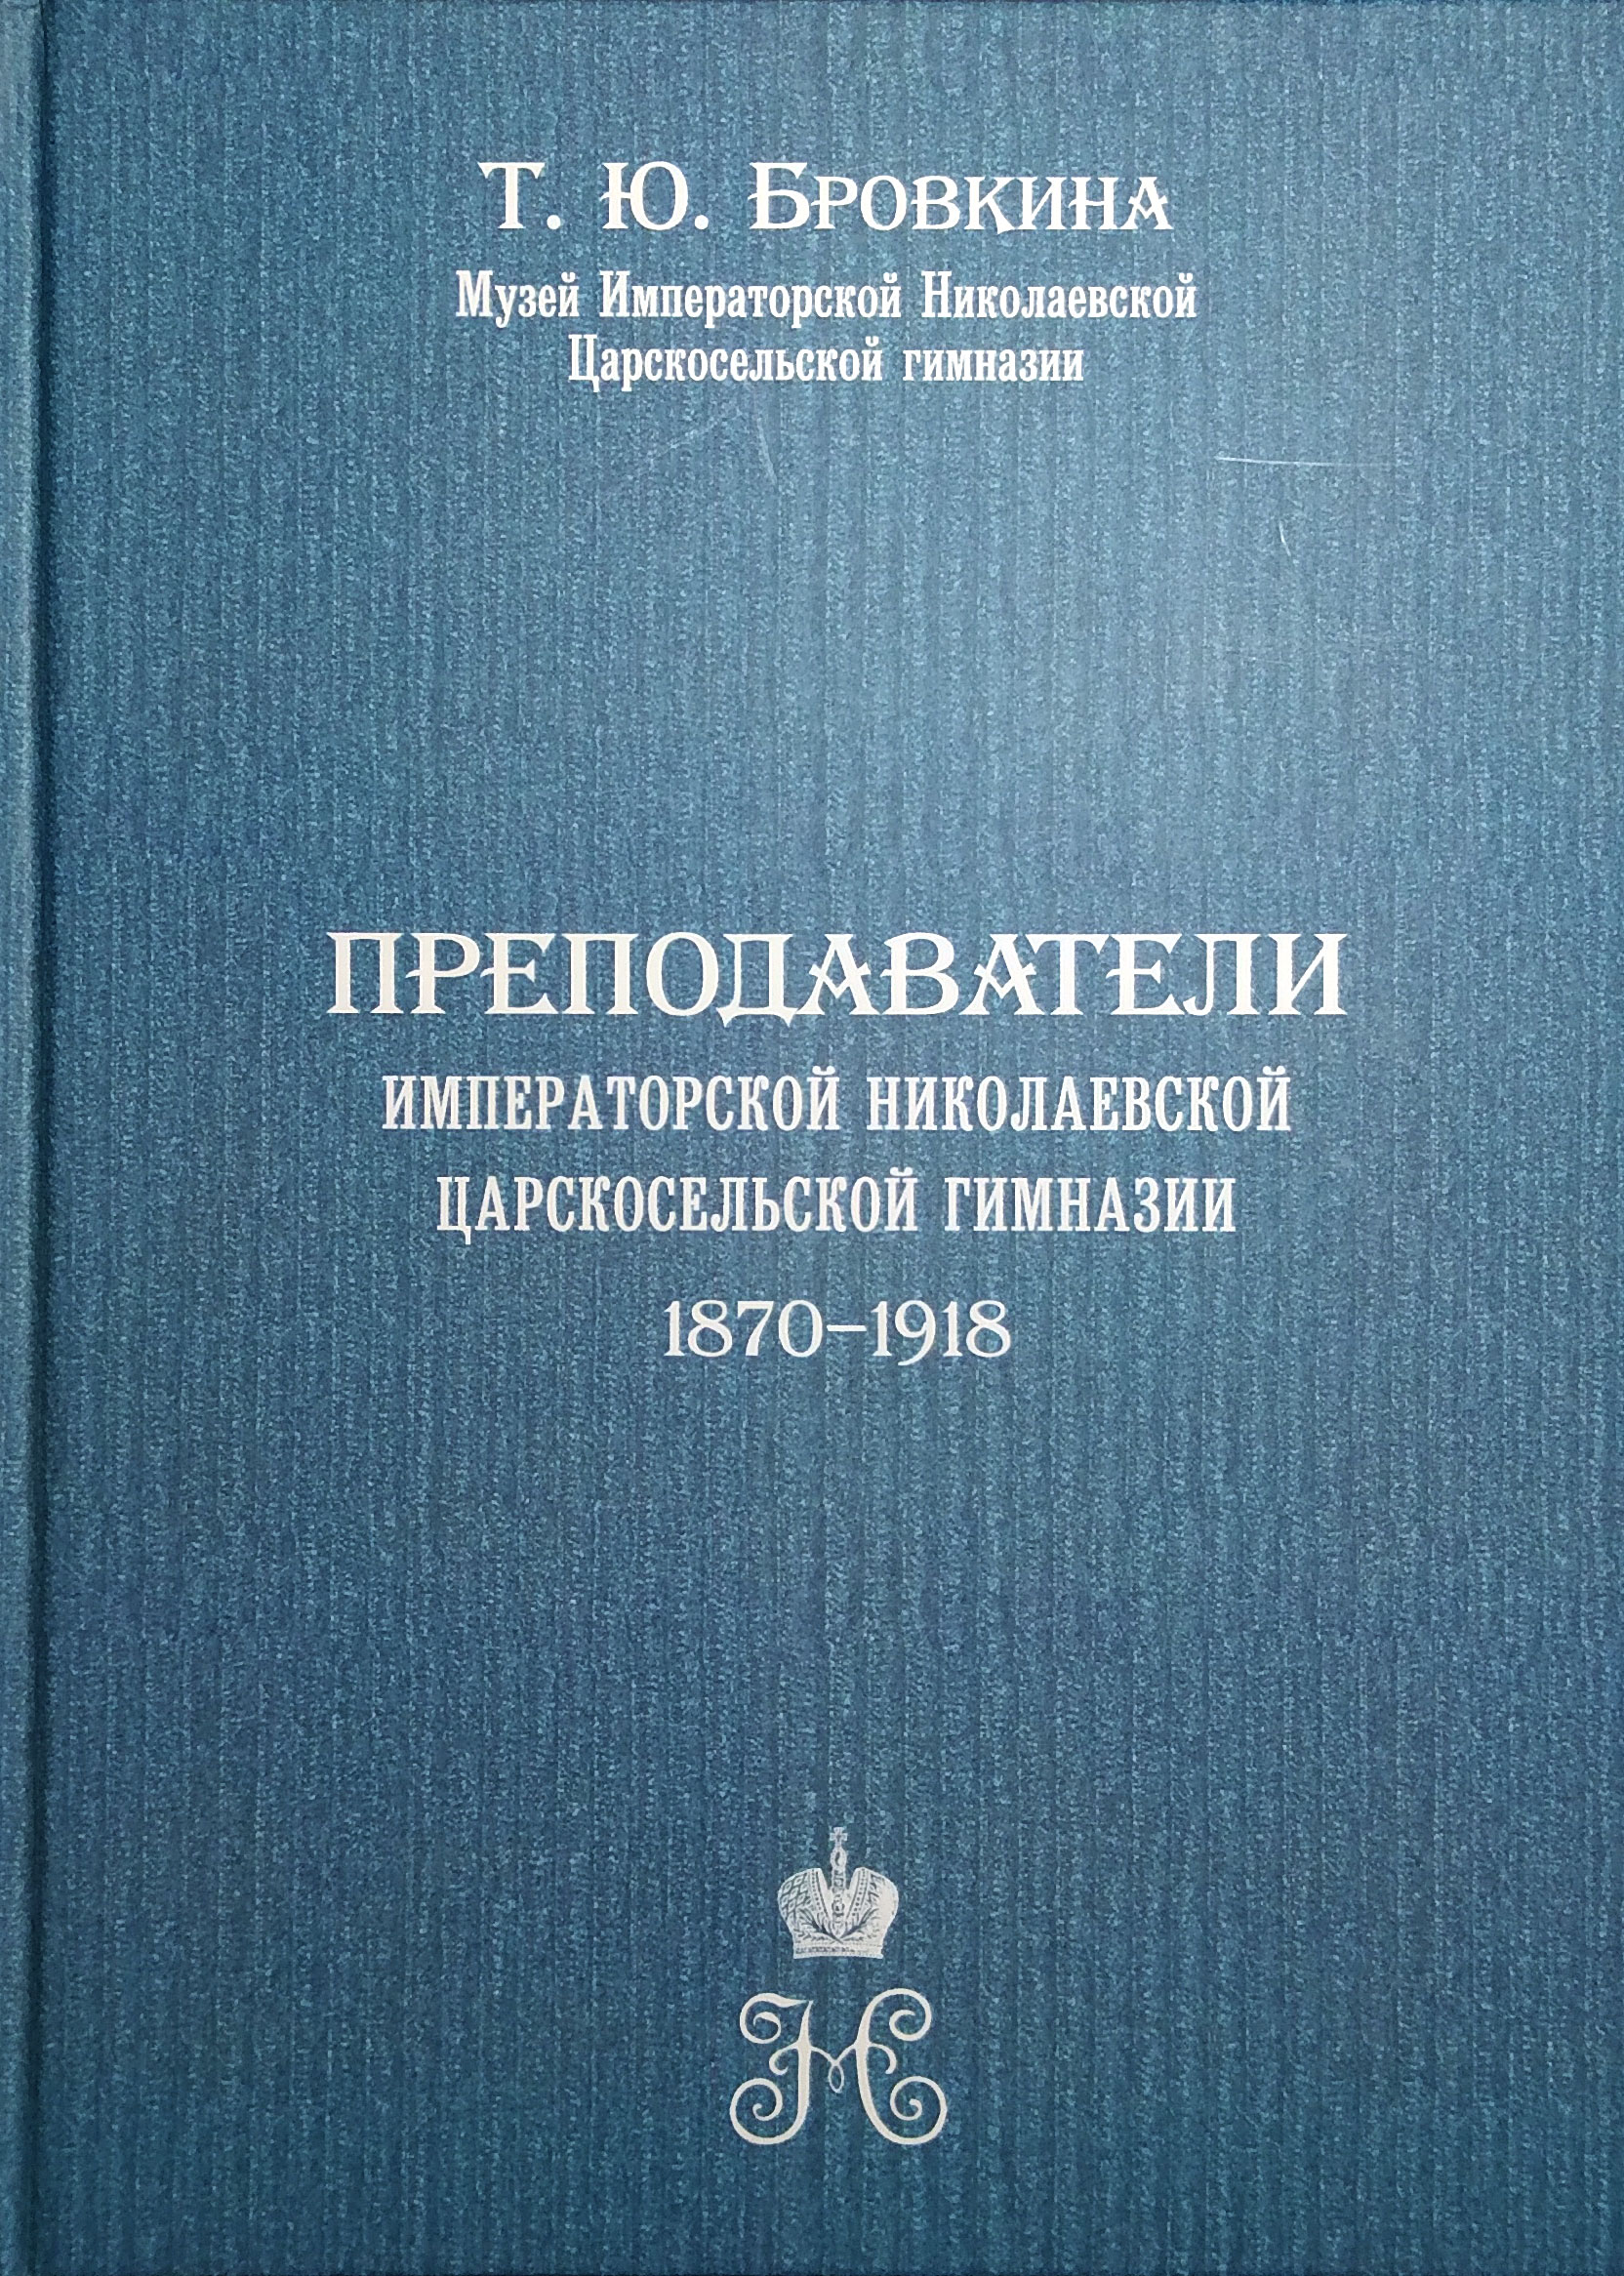 Преподаватели Императорской Николаевской Царскосельской гимназии 1870-1918